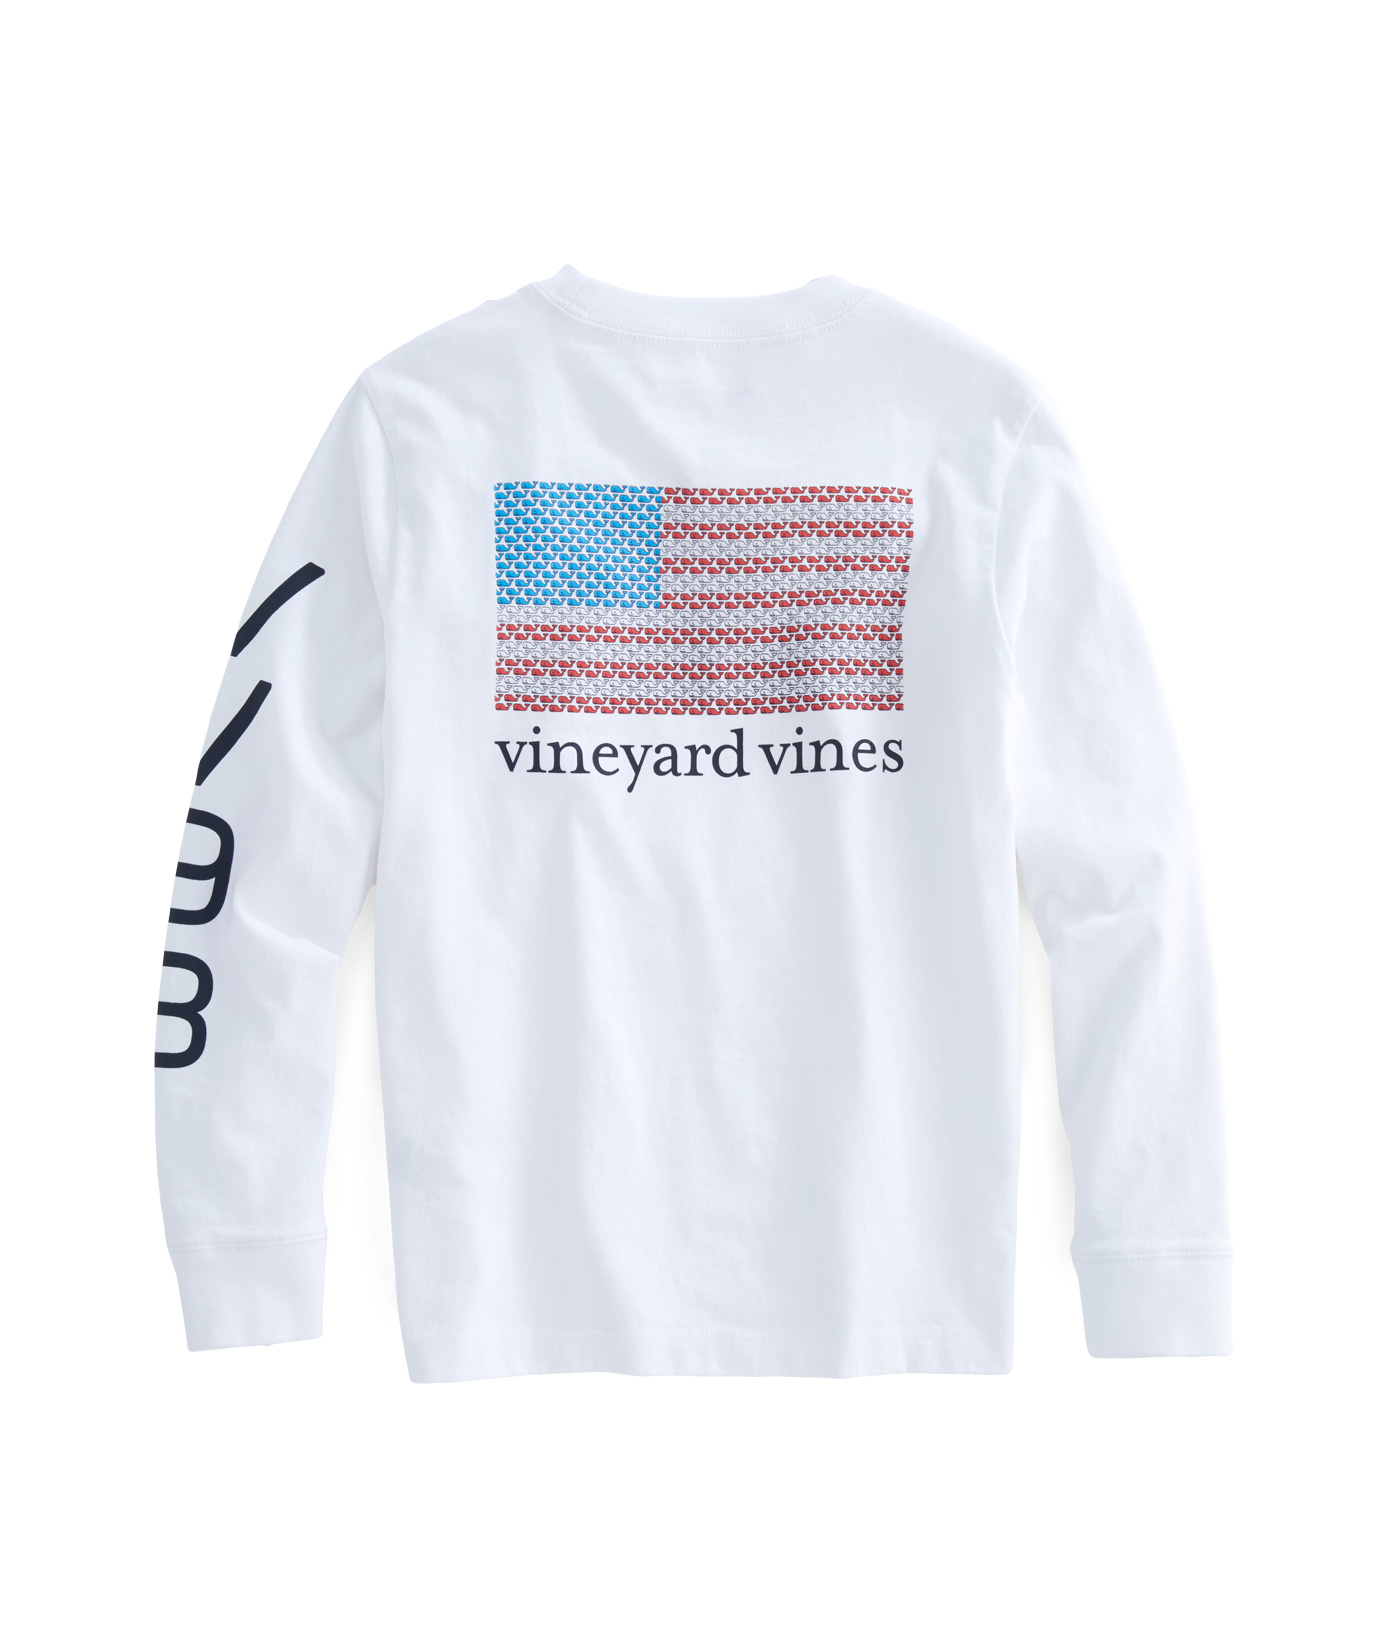 vineyard vines vikings